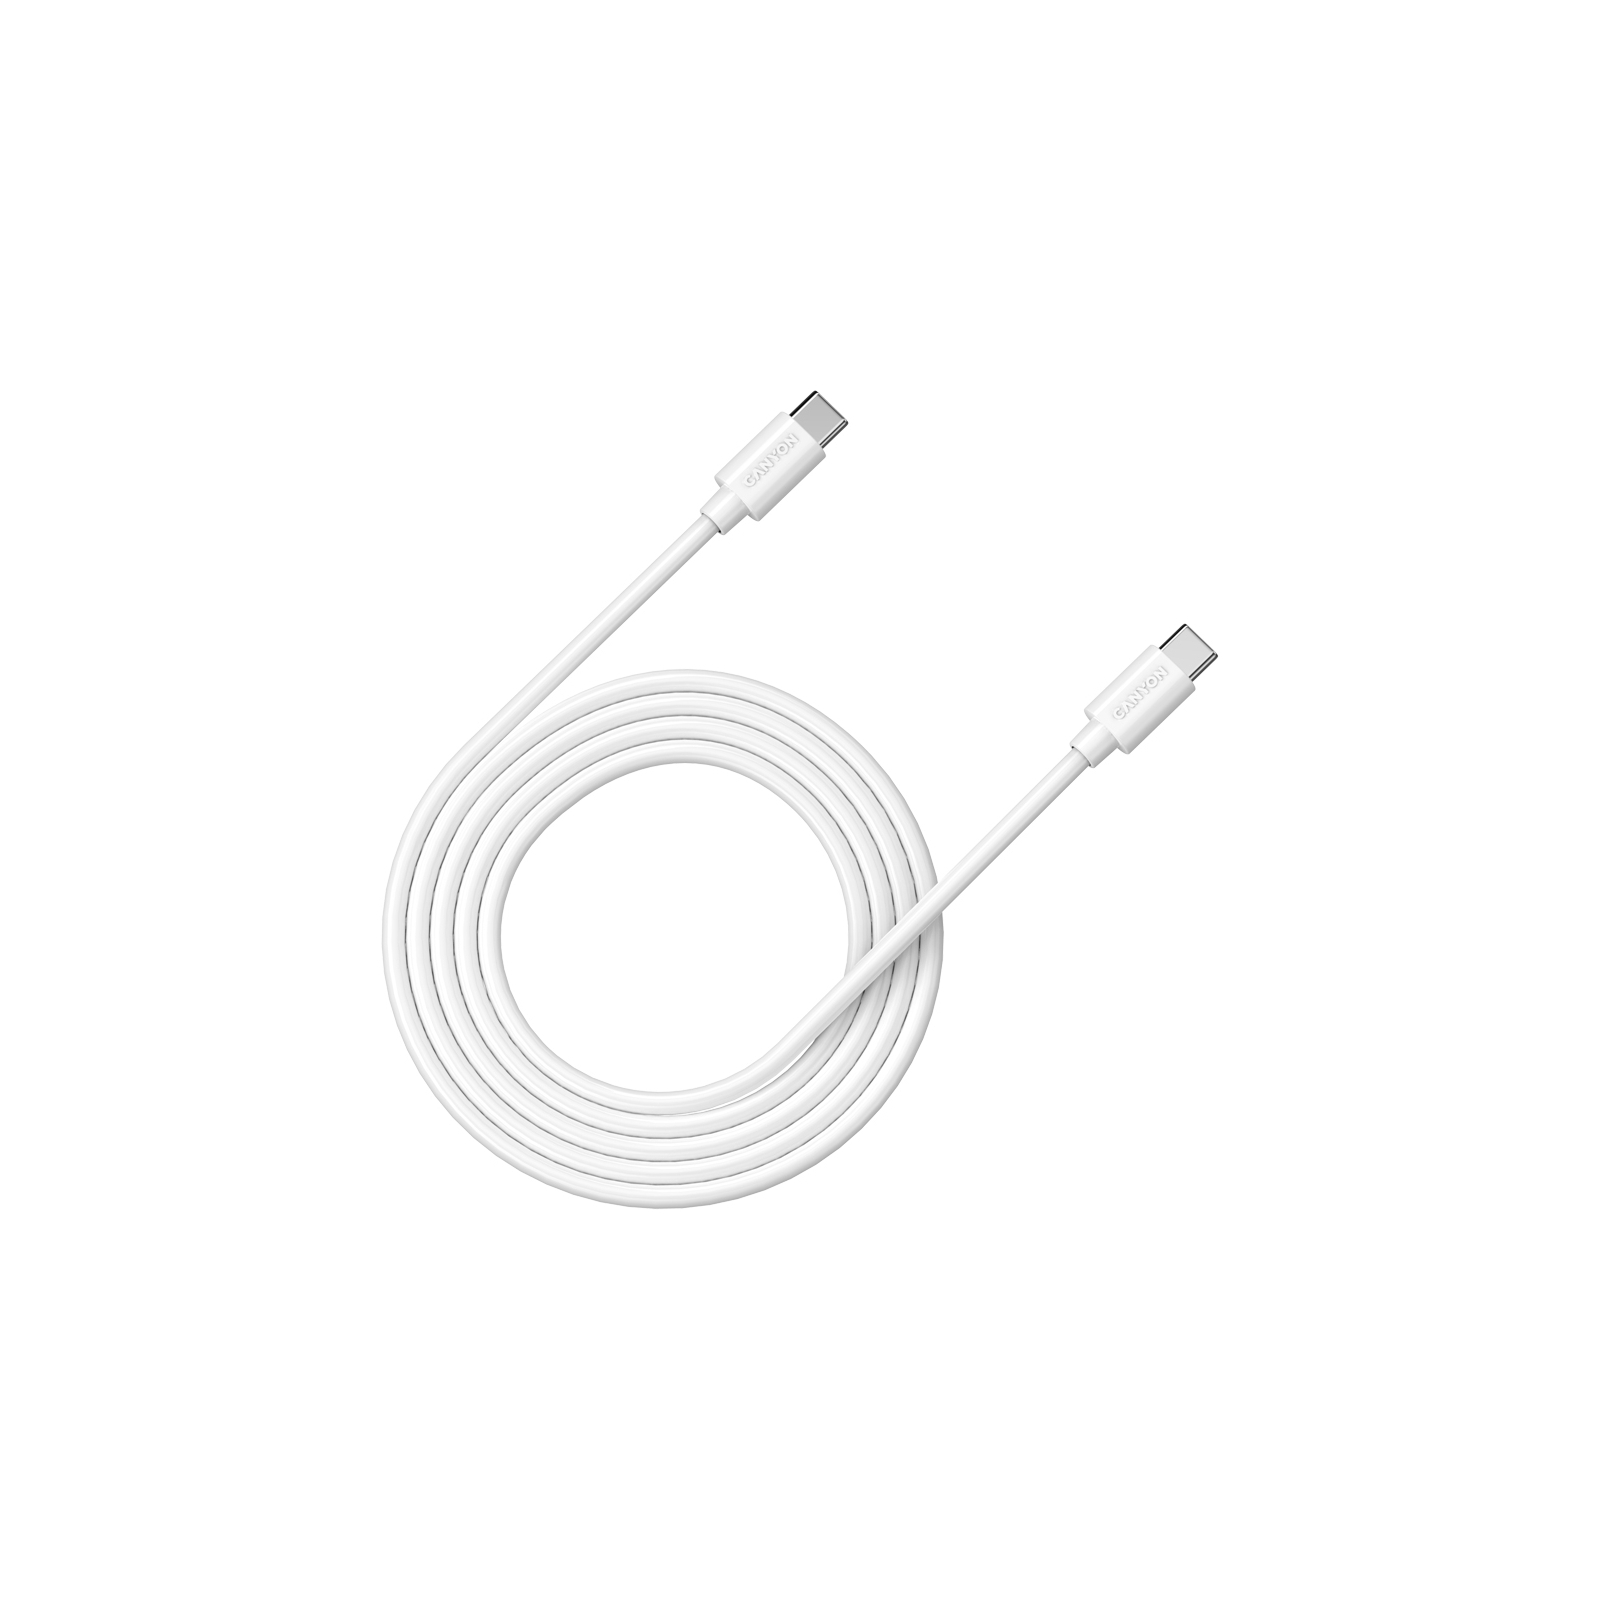 Дата кабель USB-C to USB-C 2.0m 100W 20V/ 5A white Canyon (CNS-USBC12W)